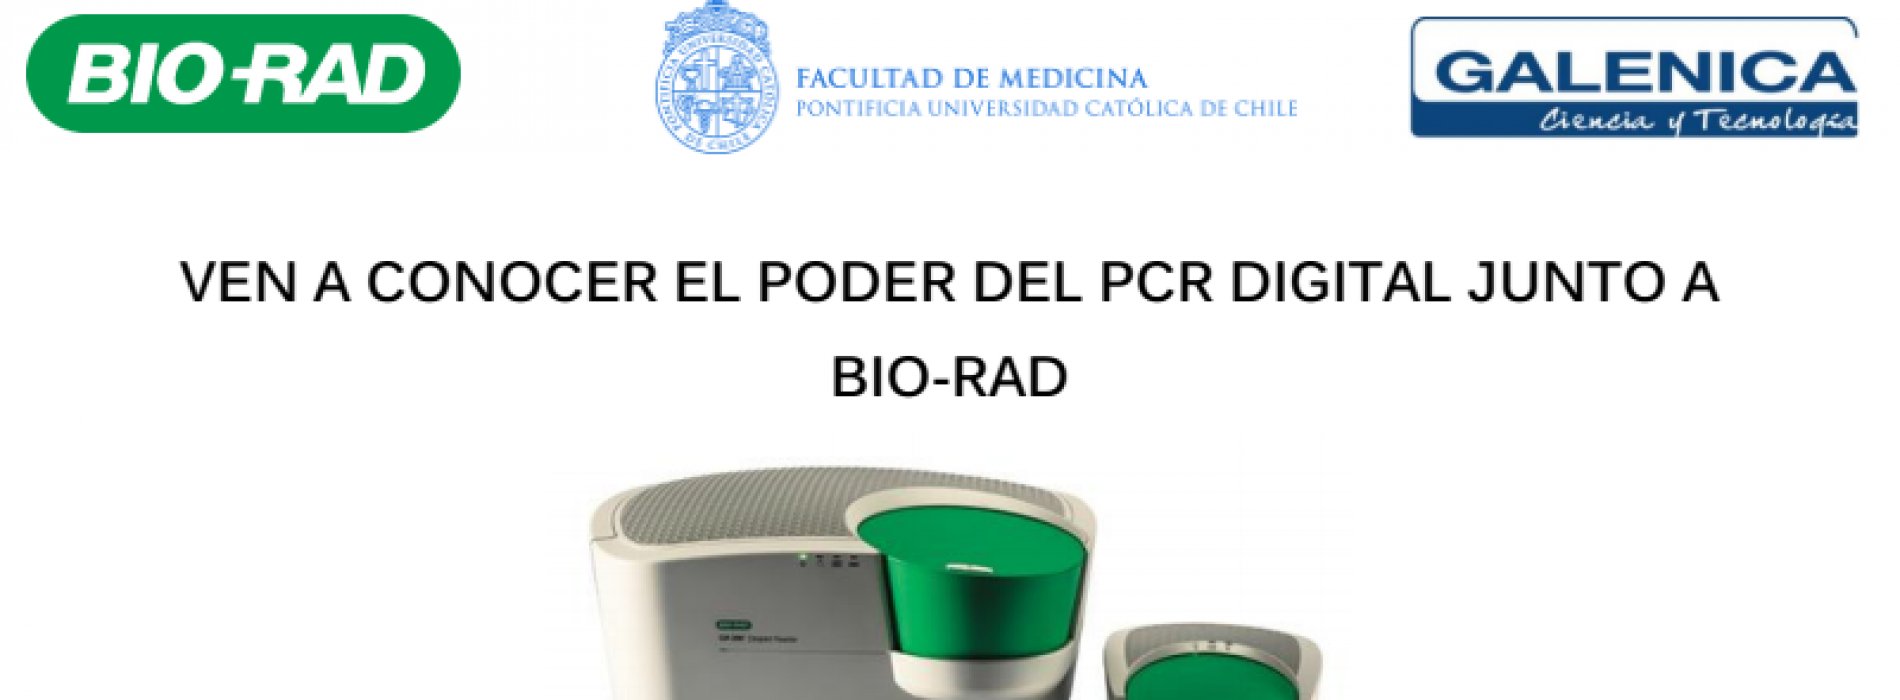 Invitación a conocer el PCR digital junto a BIO-RAD